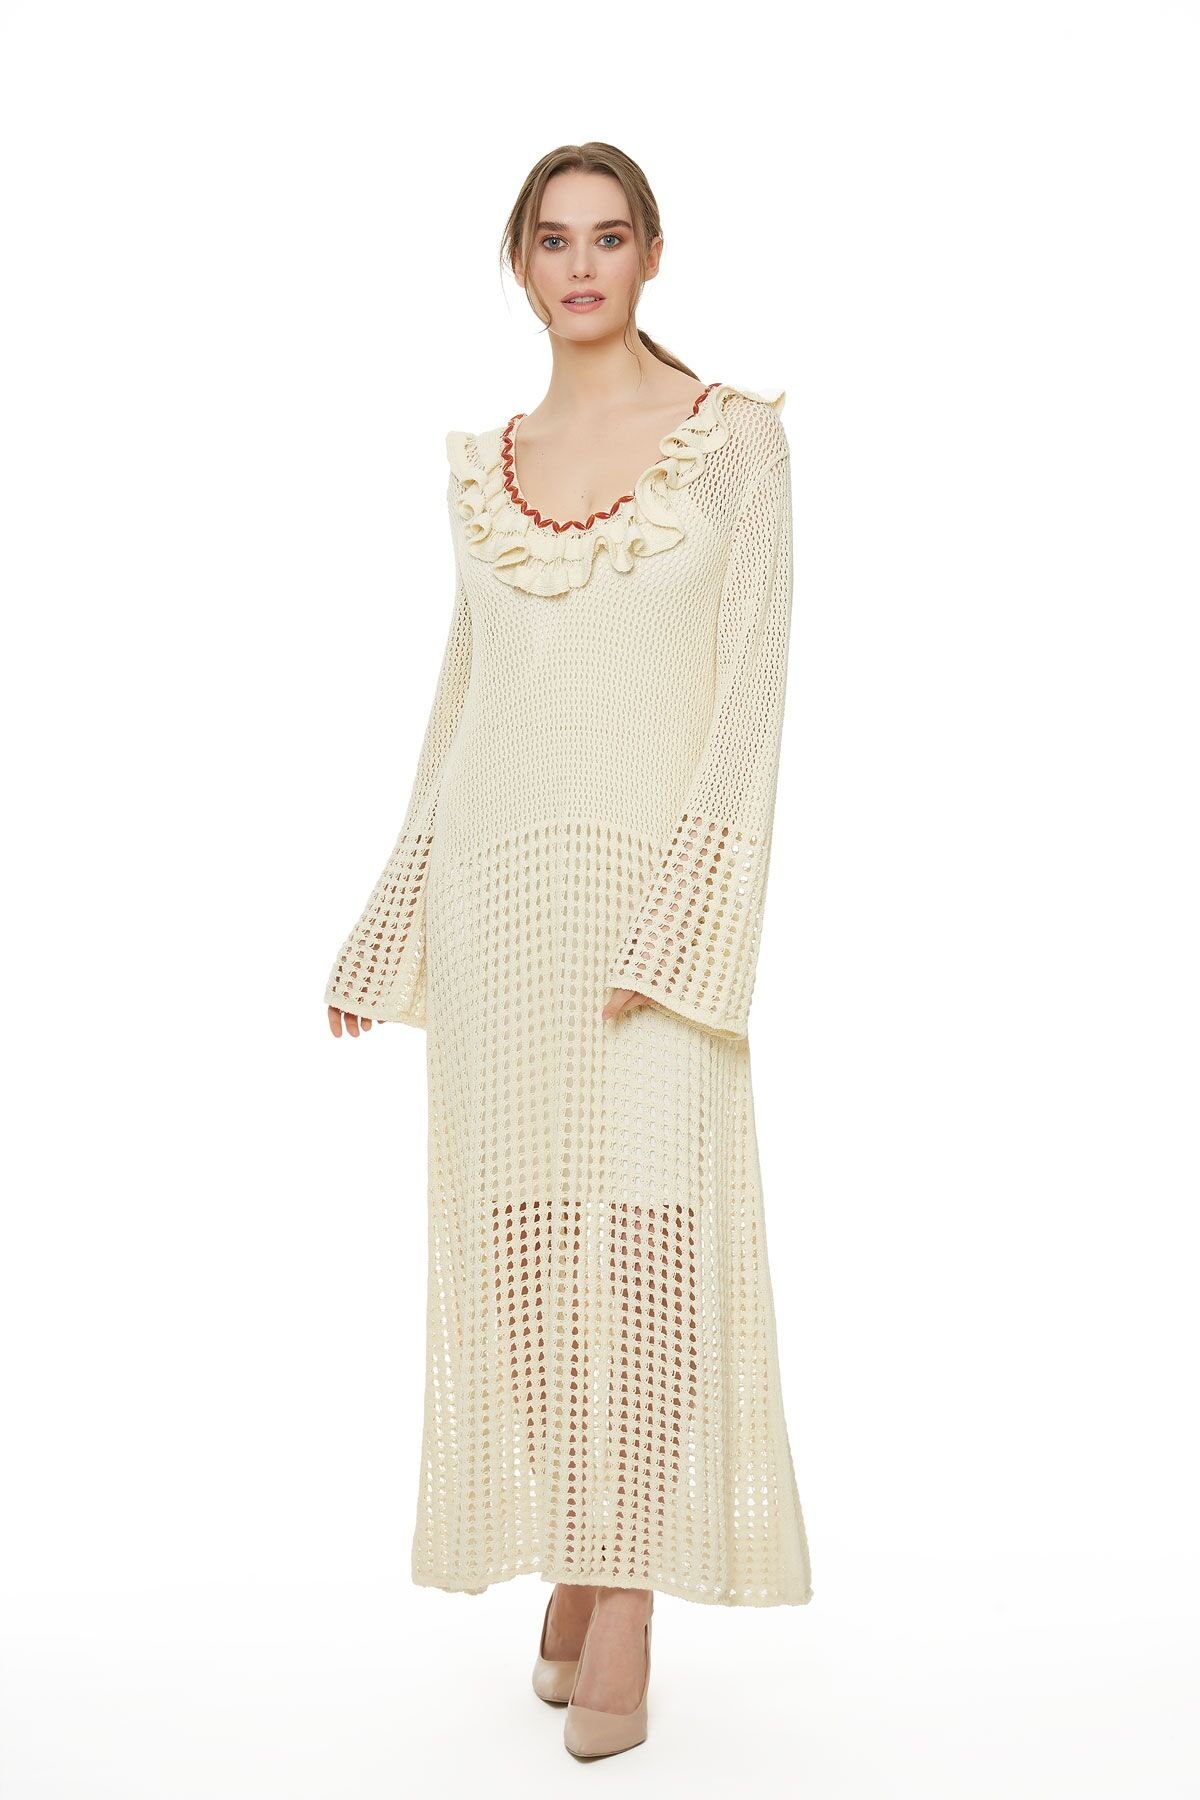 Beige Knitwear Midi Length Dress